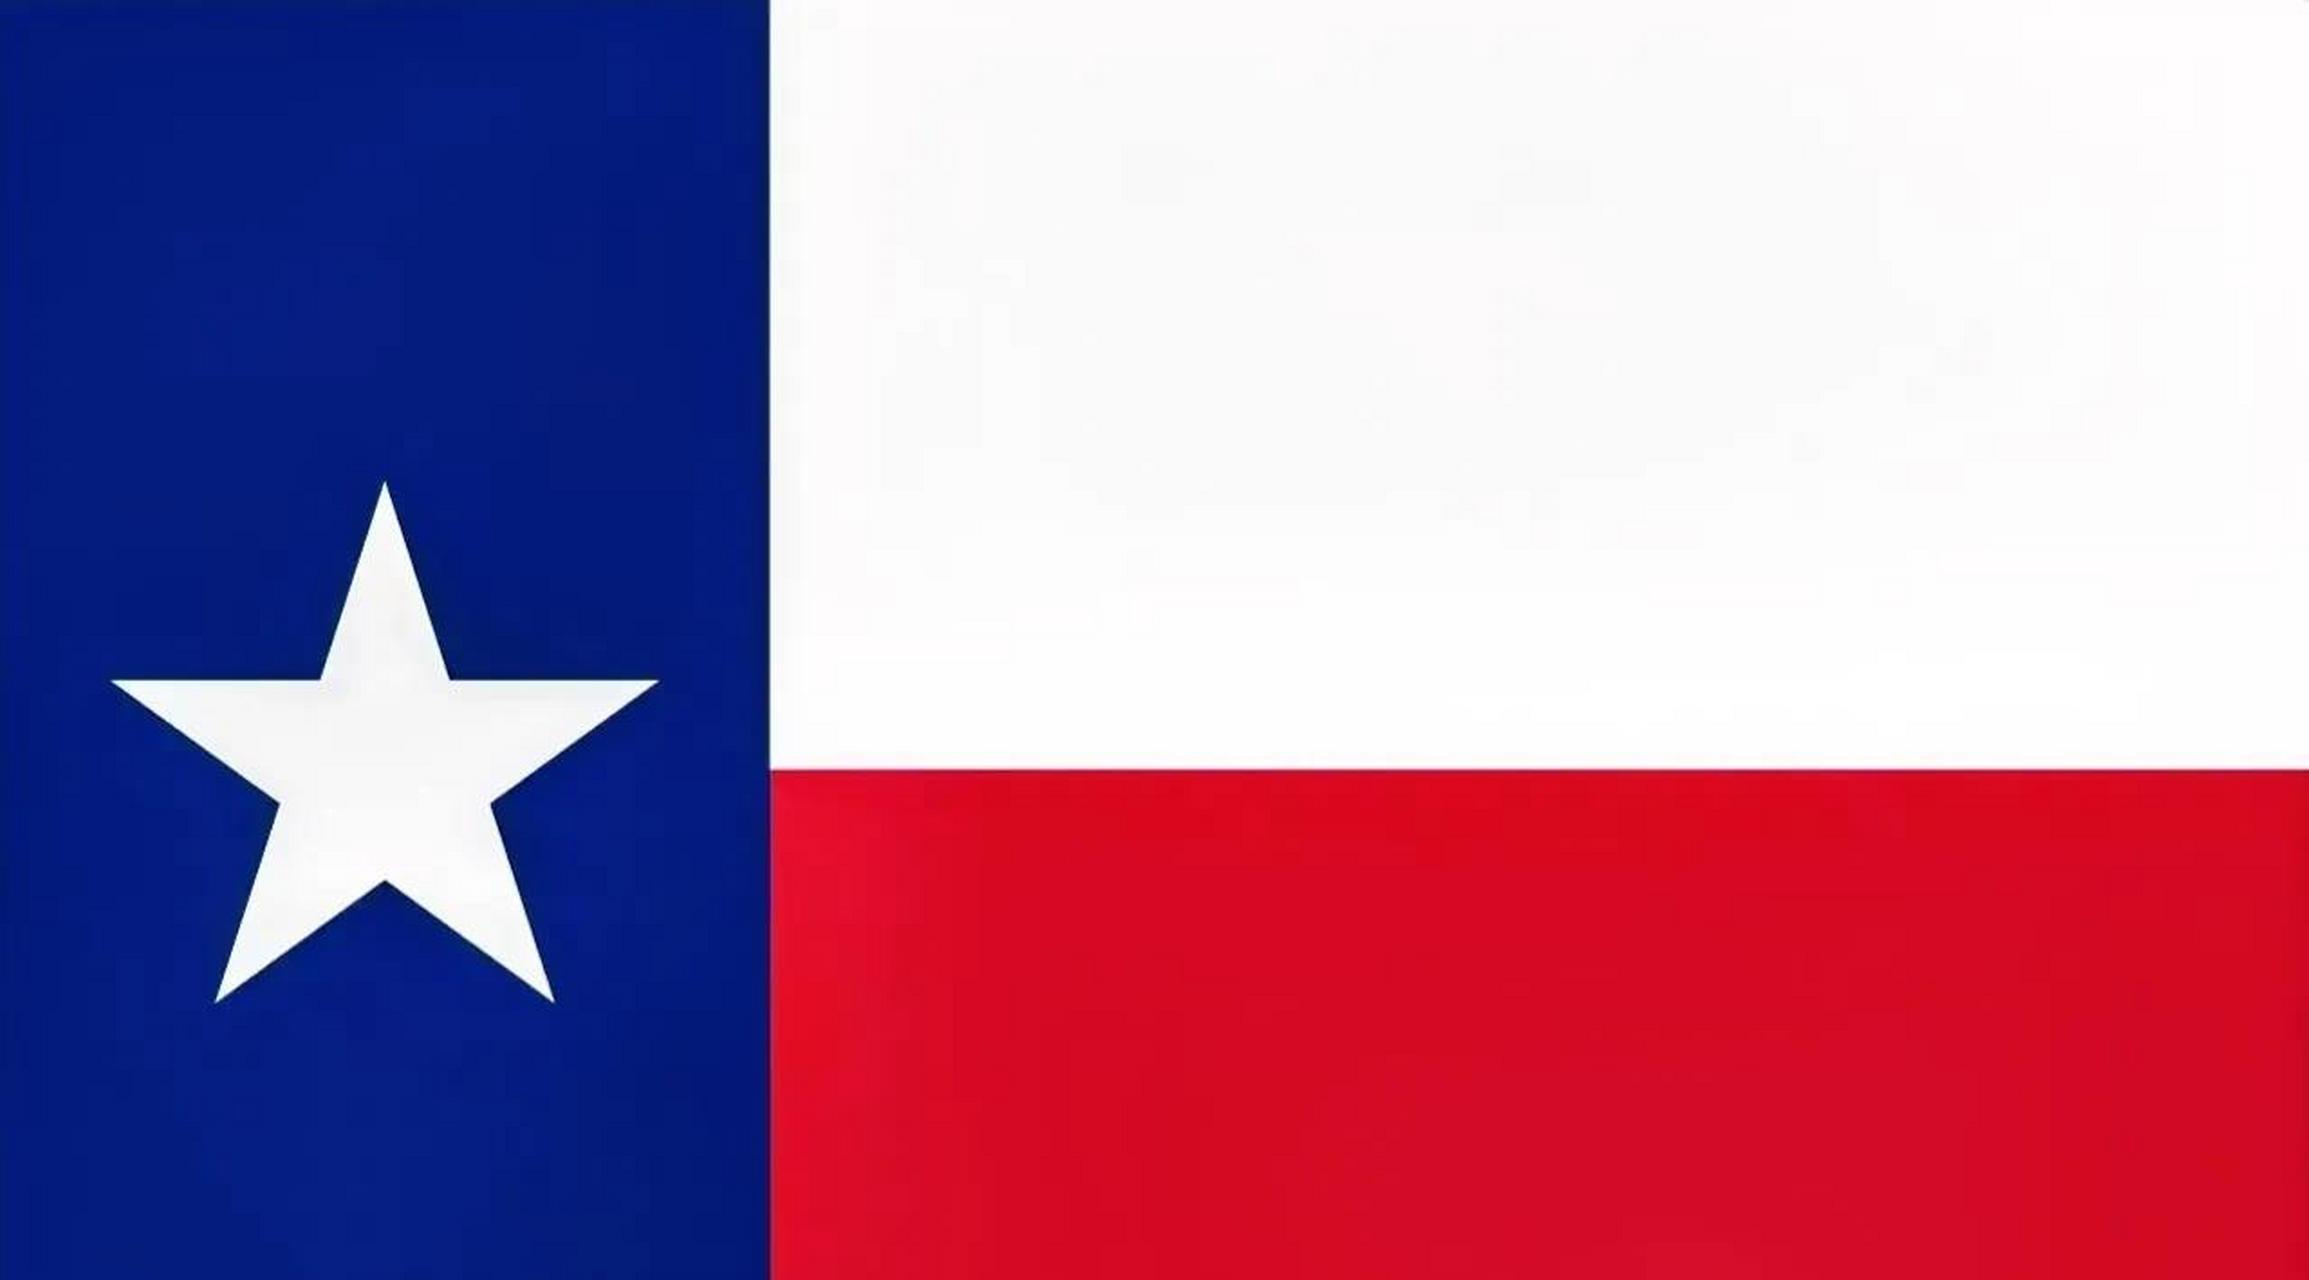 独立公投 4月28日,据俄罗斯塔斯社报道,美国德克萨斯州将在今年11月7